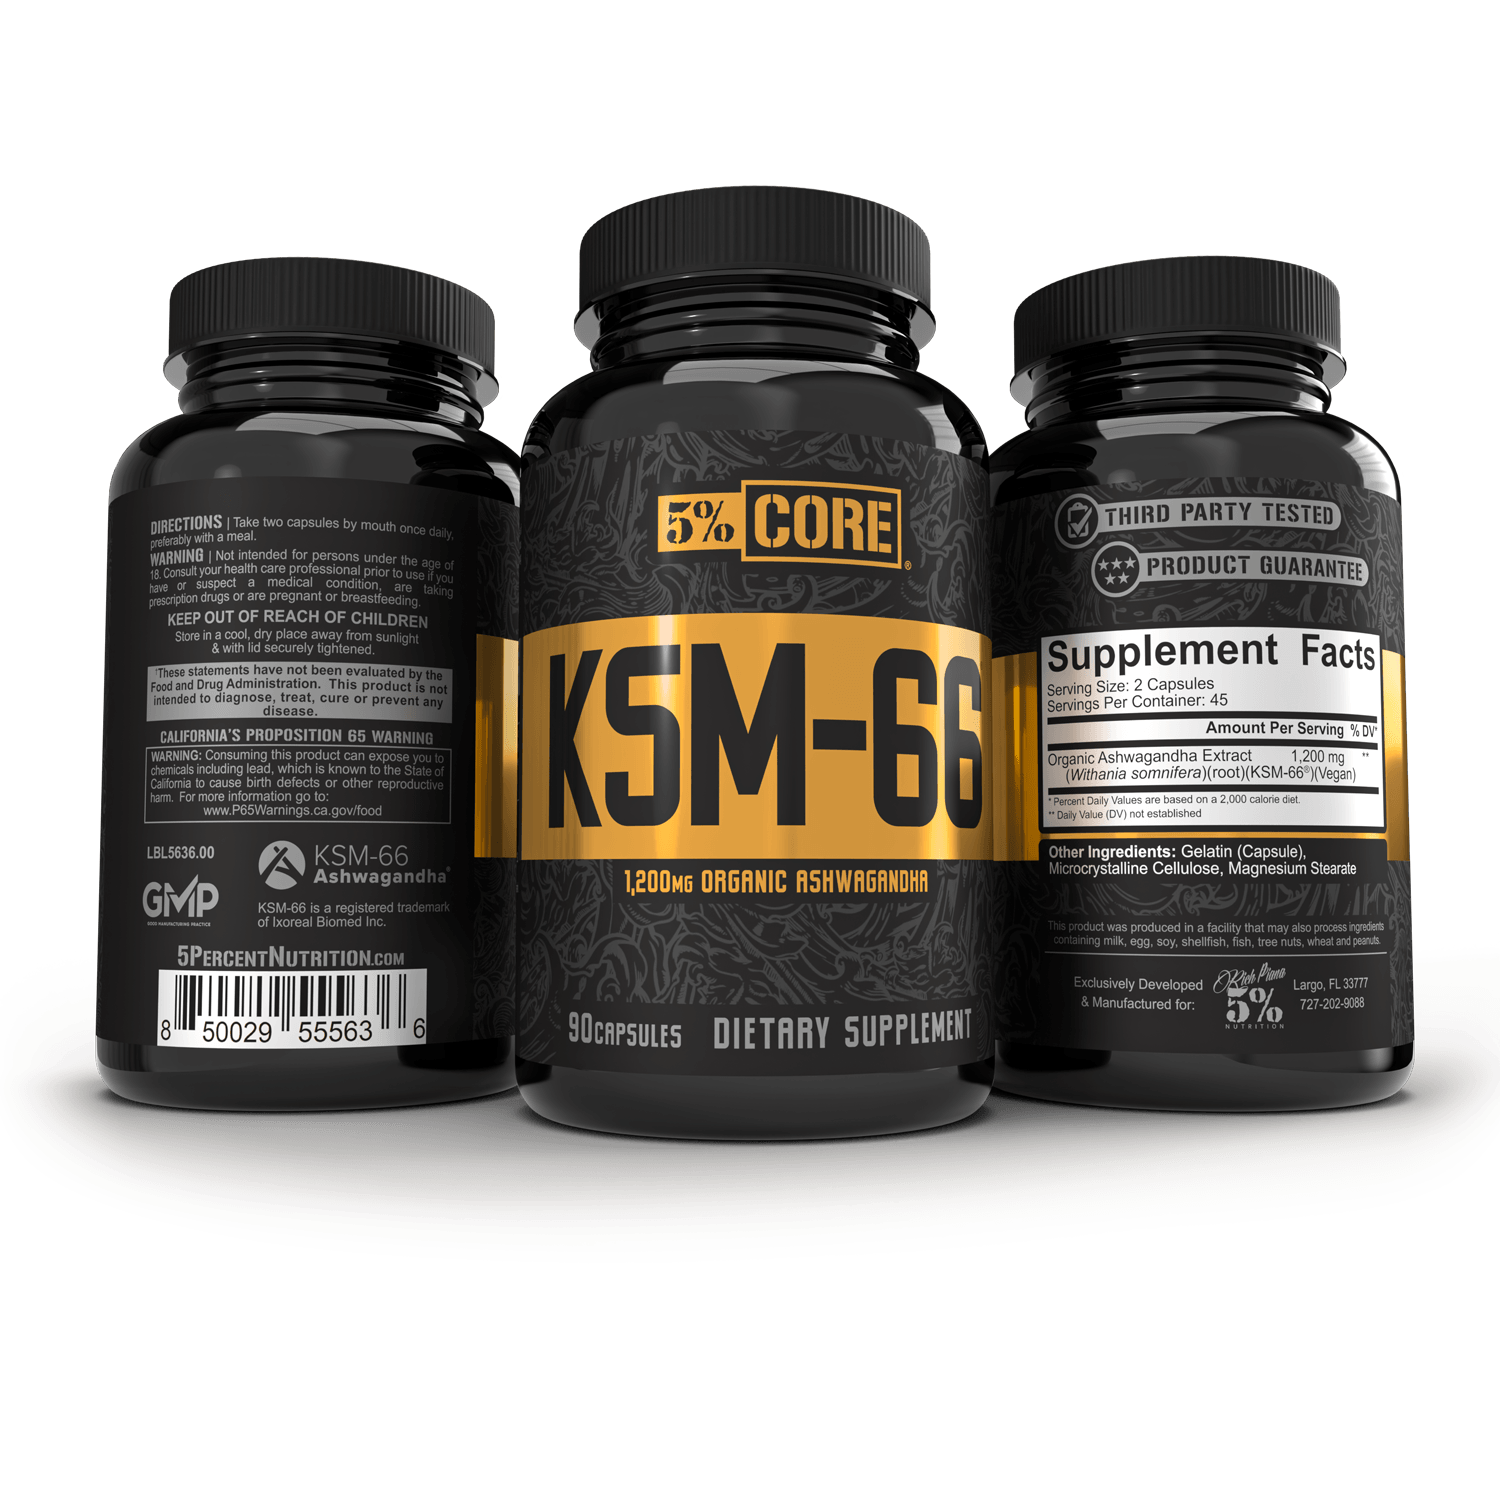 KSM-66® Ashwagandha - 5% Nutrition